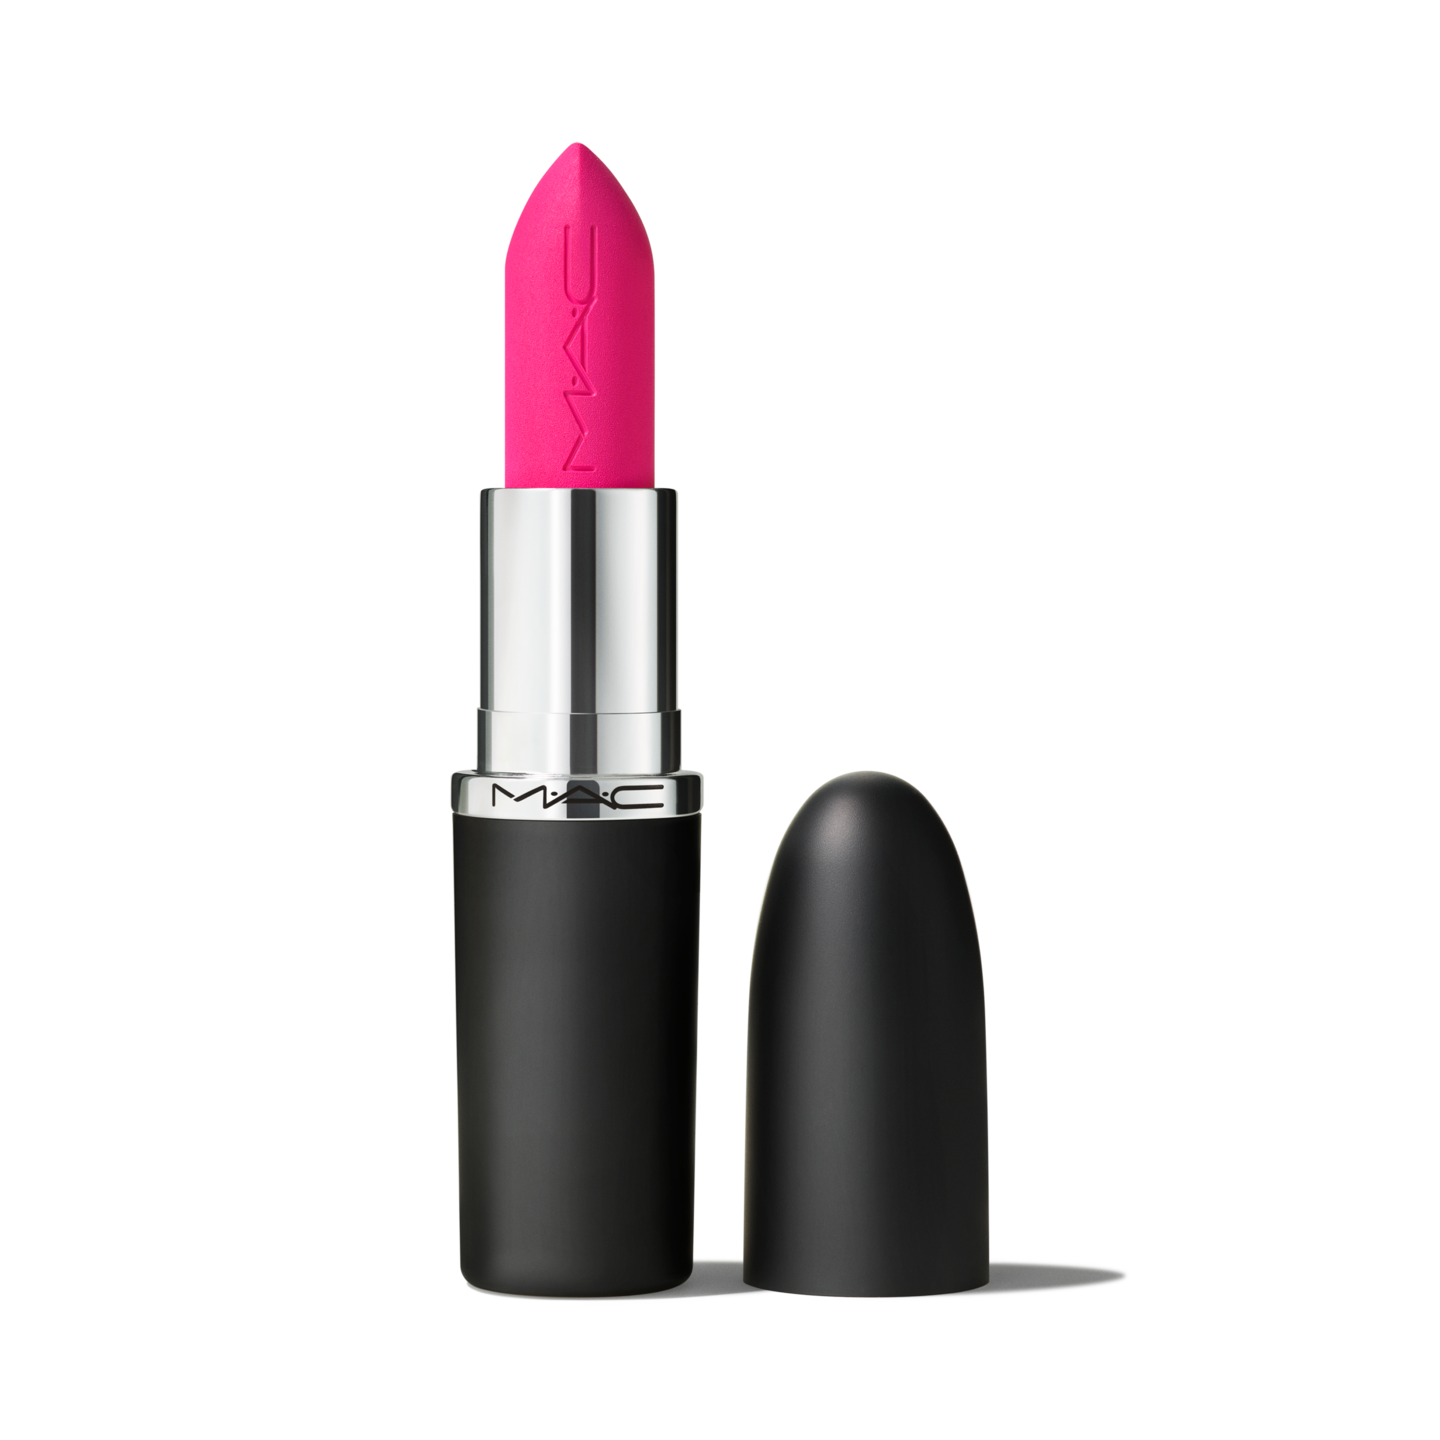 M·A·C Velvet Teddy Lipstick 3g/0.1 us.oz Beige Brown Matte Cosmetics #617